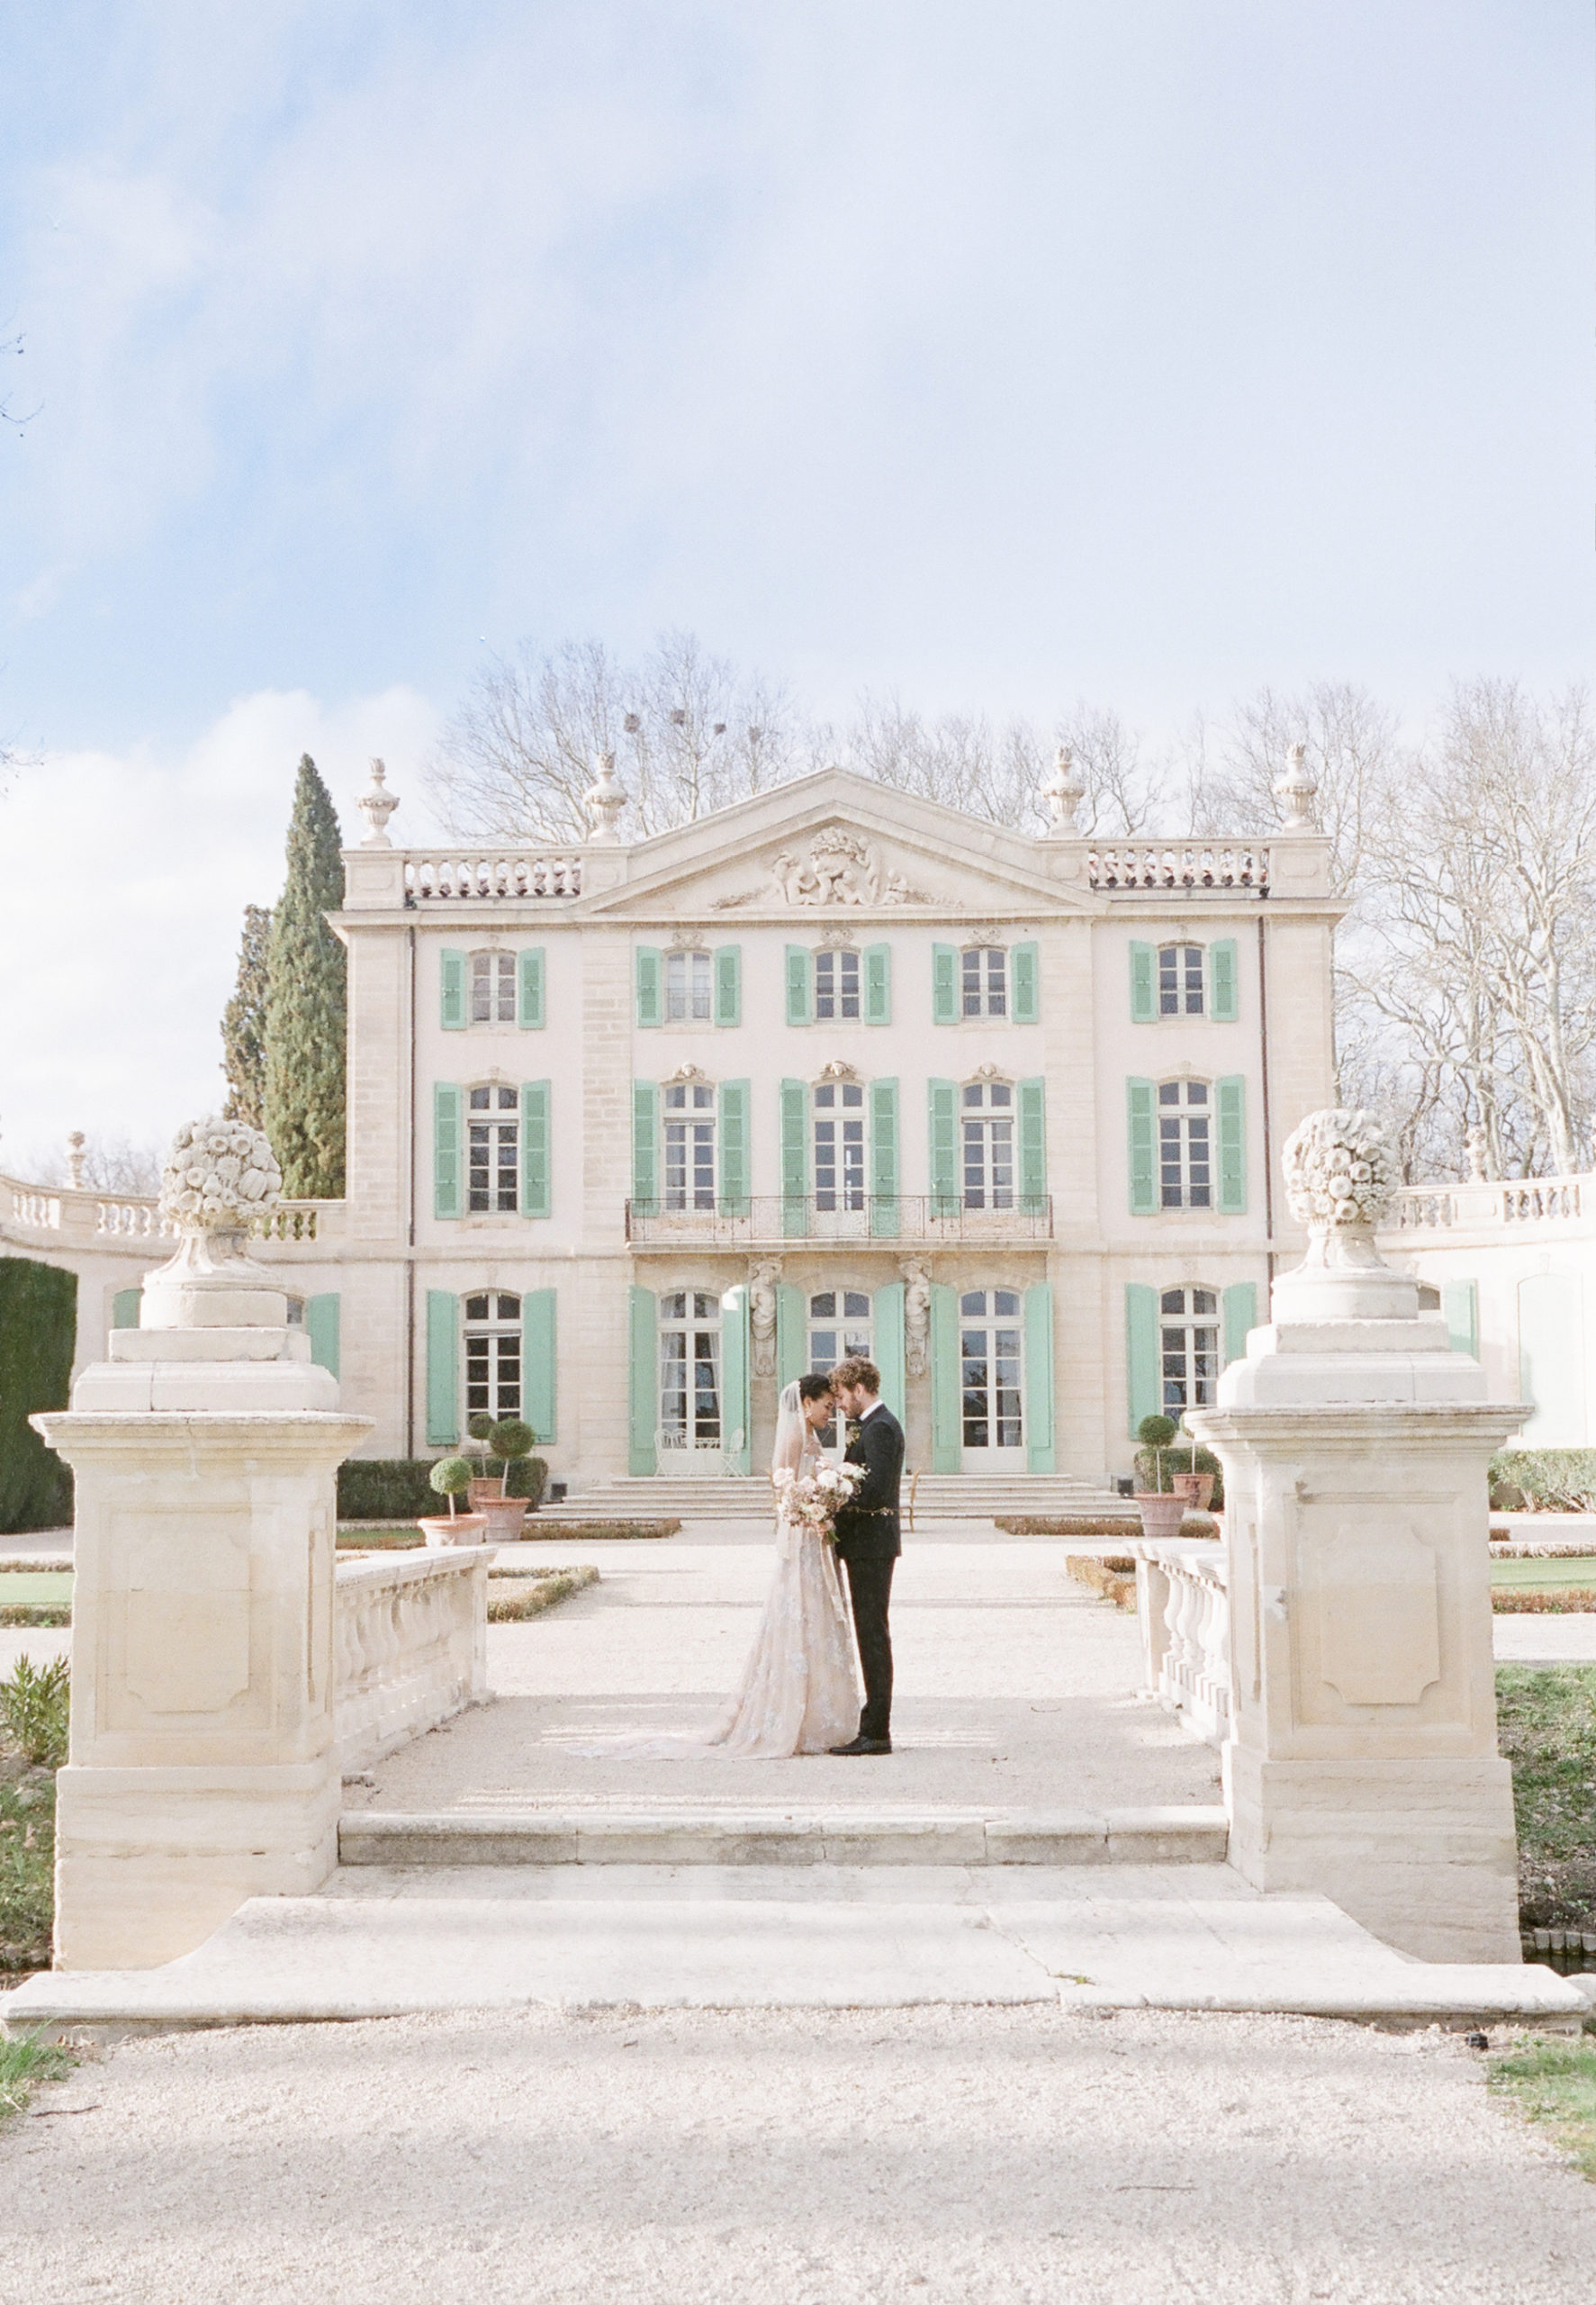 Mariage de Printemps au Château de Tourreau